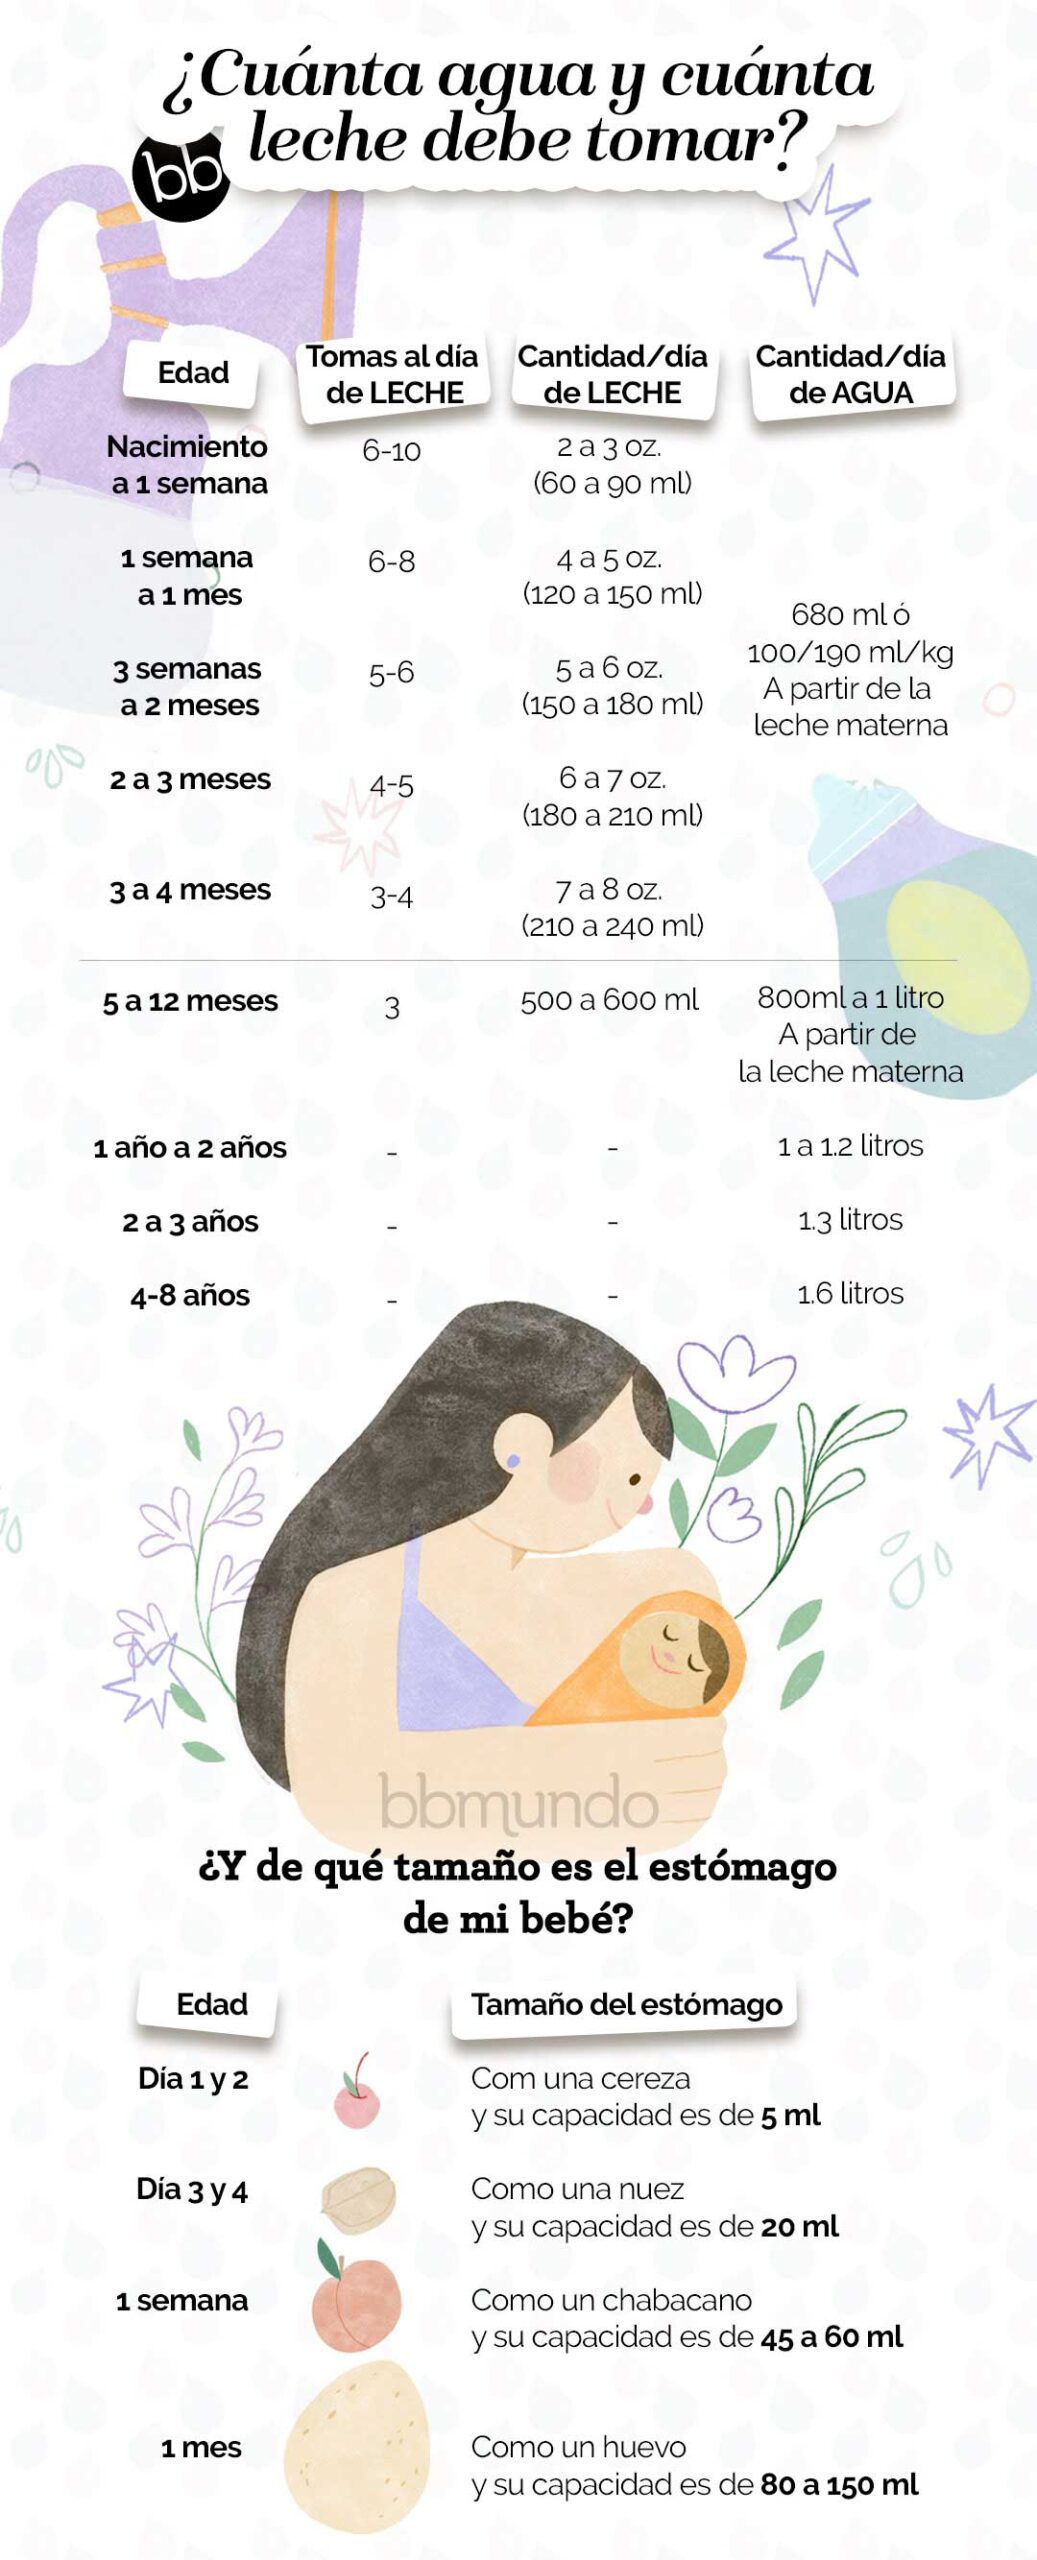 falta brandy recurso renovable Cuánta agua y cuánta leche debe tomar mi bebé? | bbmundo